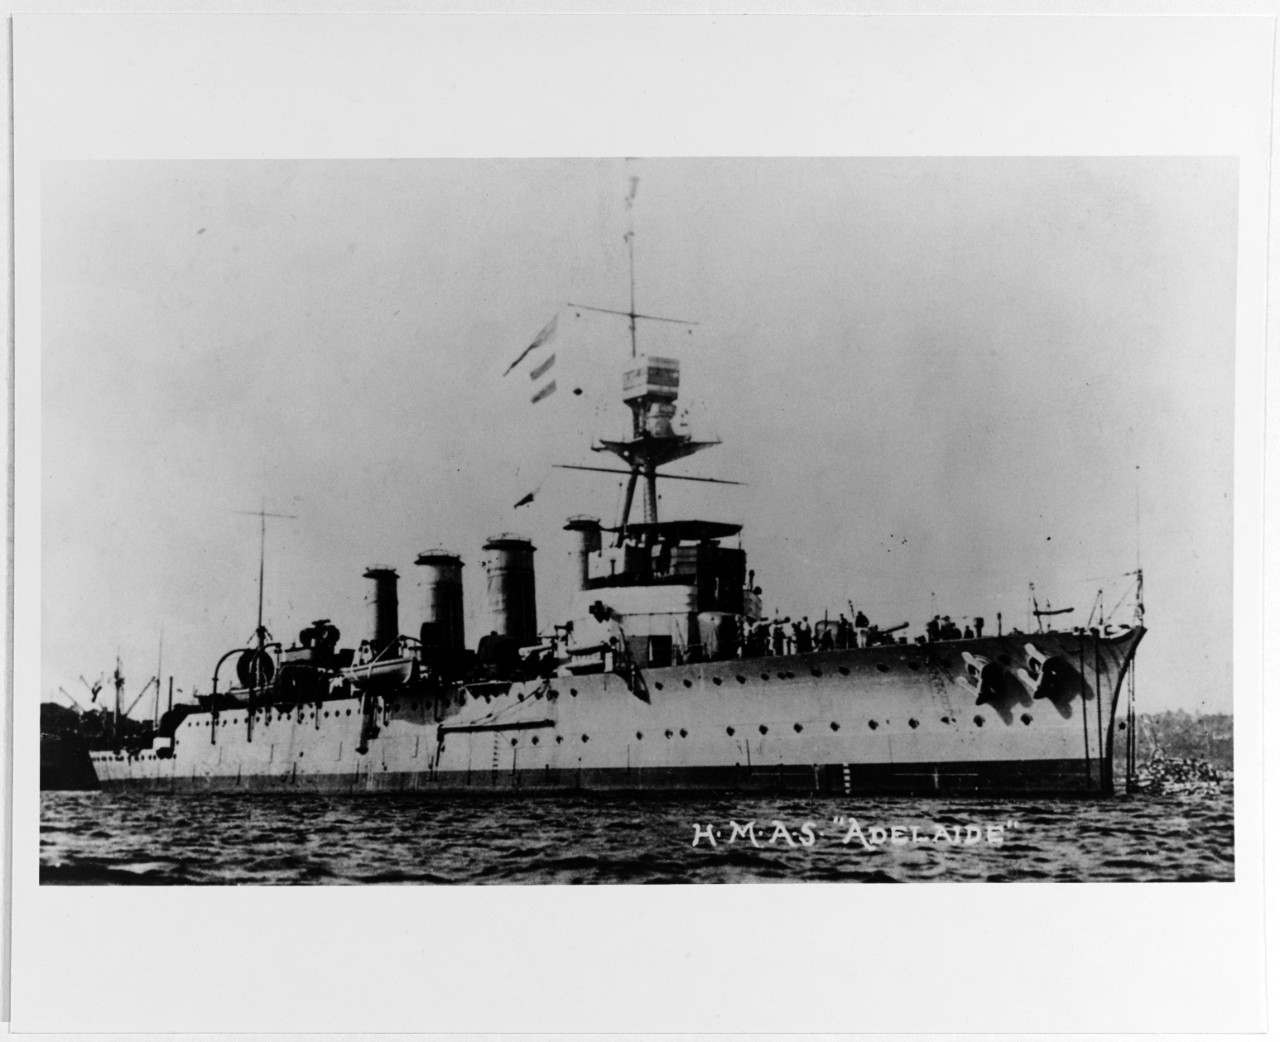 ADELAIDE (Australian light cruiser, 1918-1949)